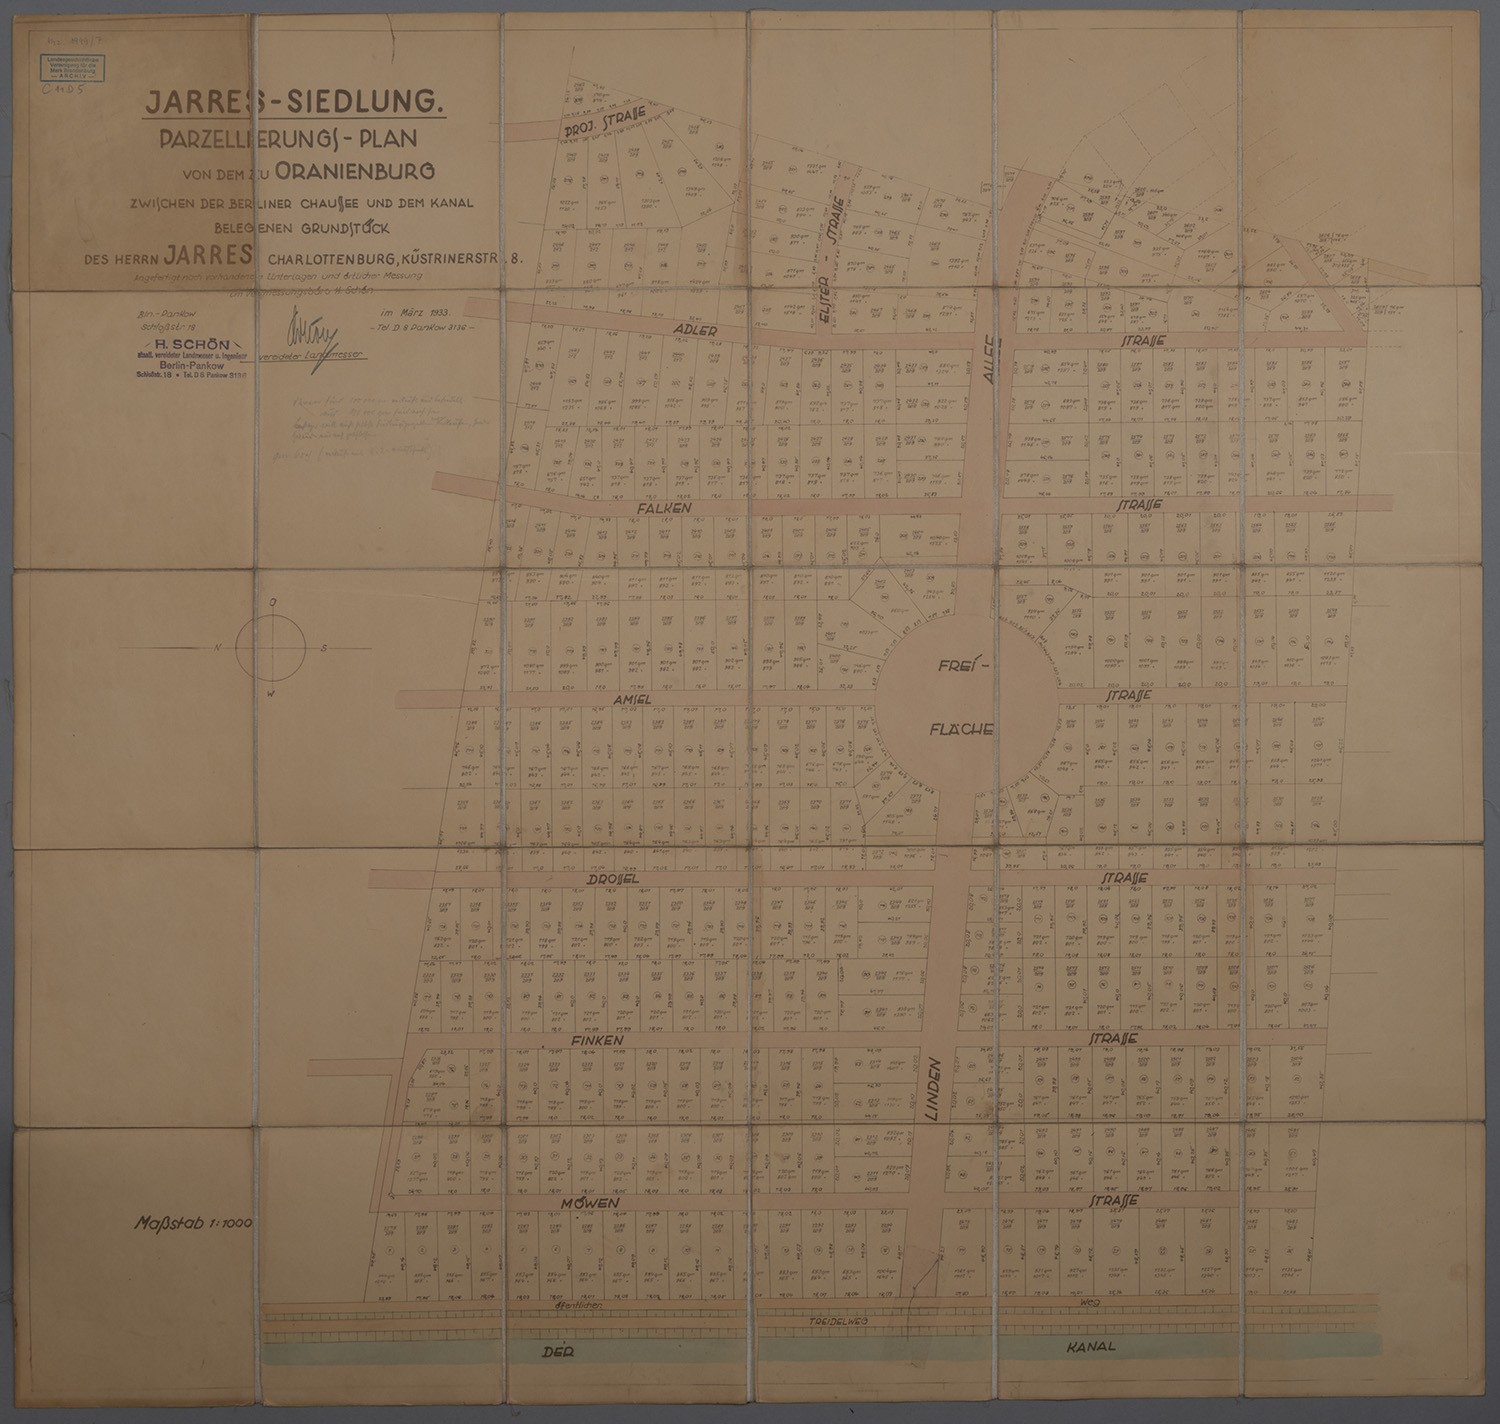 Oranienburg: Jarres-Siedlung. Parzellierungsplan. Maßtab 1.1.000 (Landesgeschichtliche Vereinigung für die Mark Brandenburg e.V., Archiv CC BY)